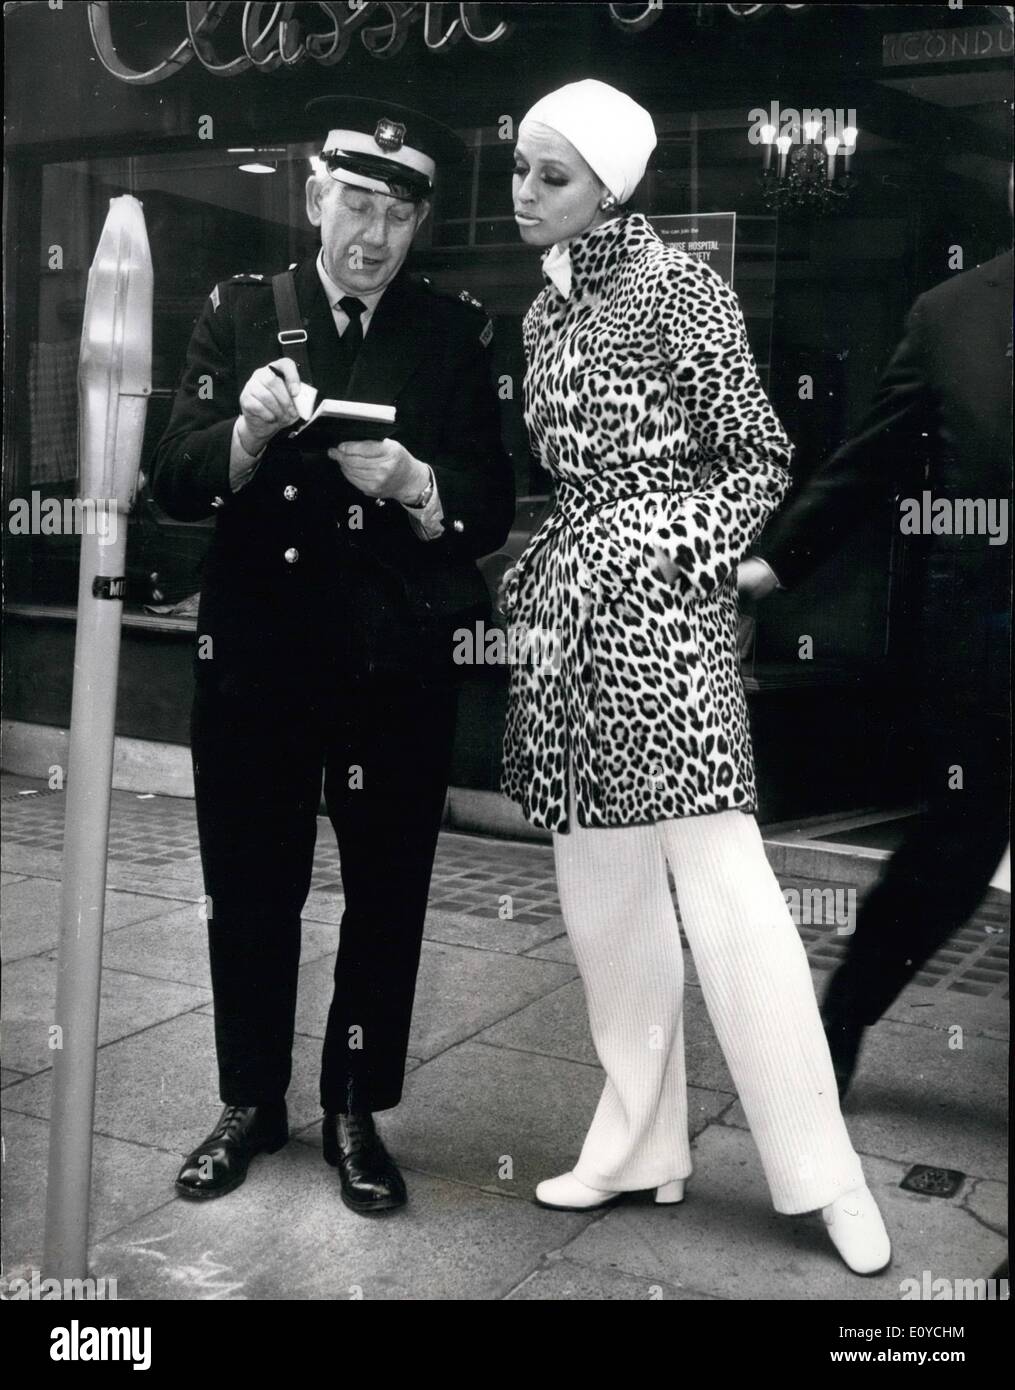 11 novembre 1969 - réservé - elle reçoit un ticket. HELGA BRAUCKMEYER, qui était Christian Dior Paris modélisation collection de fourrures, n'a pas l'air trop heureux alors qu'elle voit un gardien de la circulation lui donner un ticket. Elle porte un manteau en ''Somalia Panther' Banque D'Images